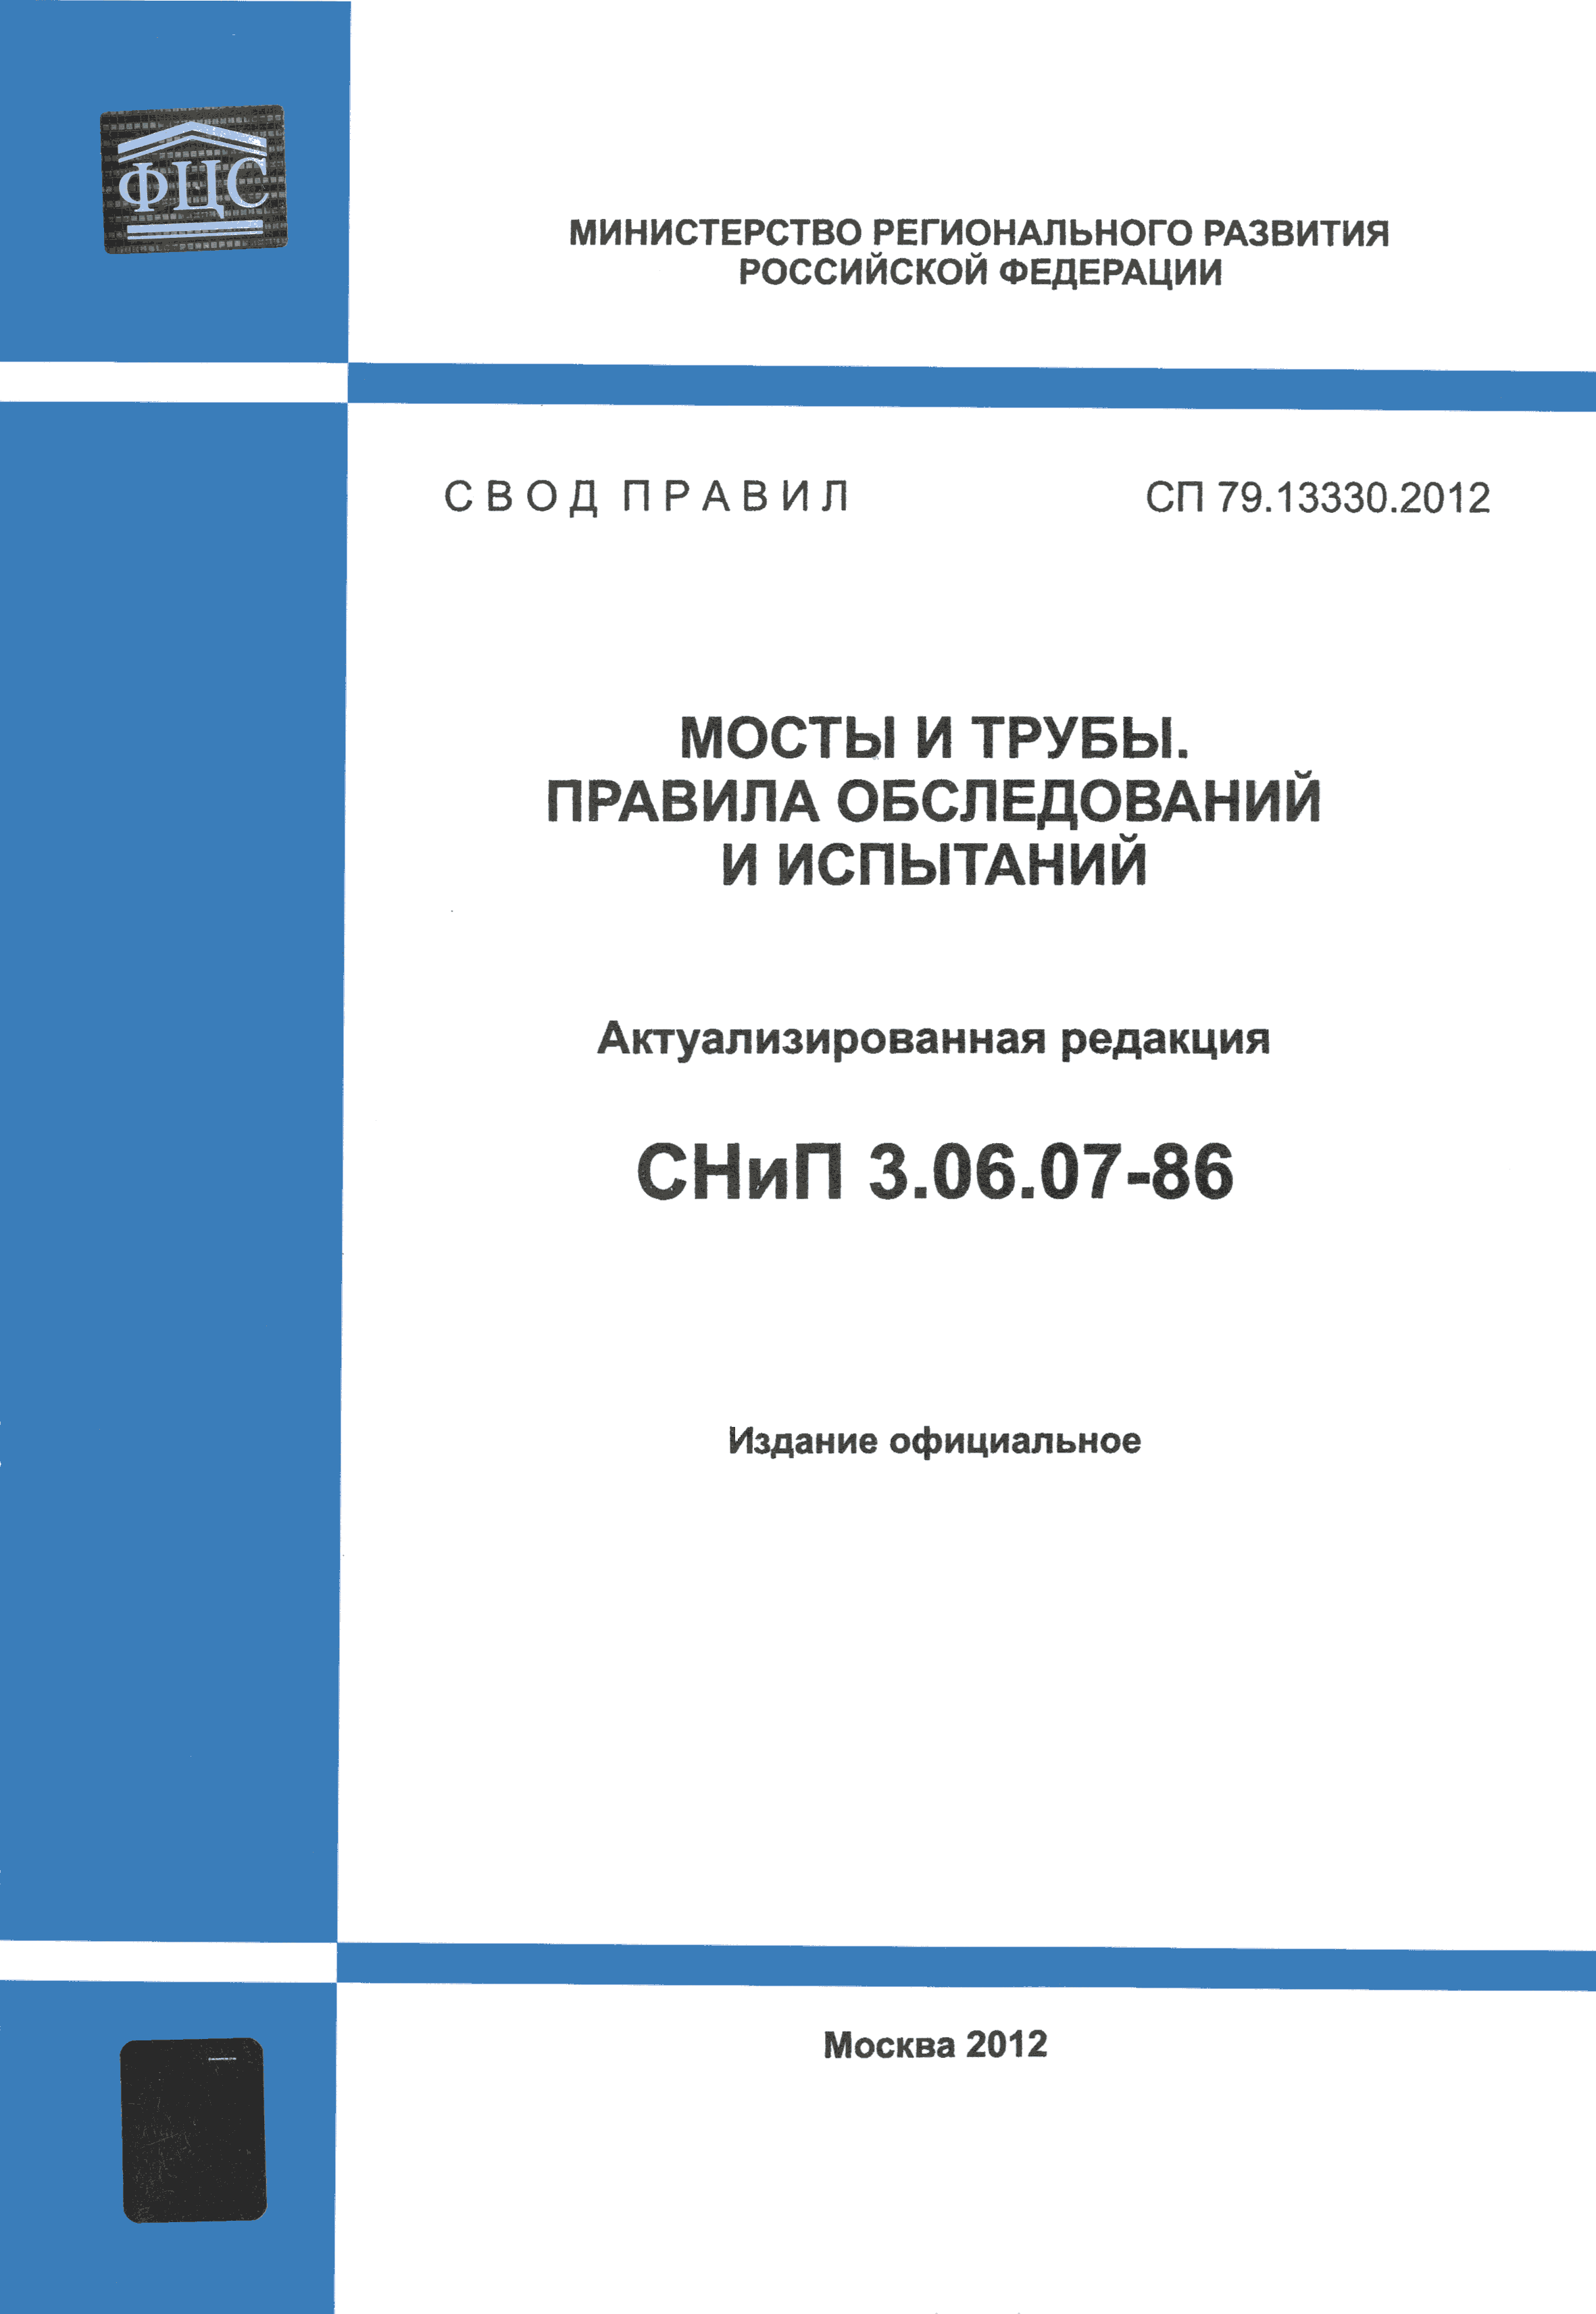 СП 79.13330.2012